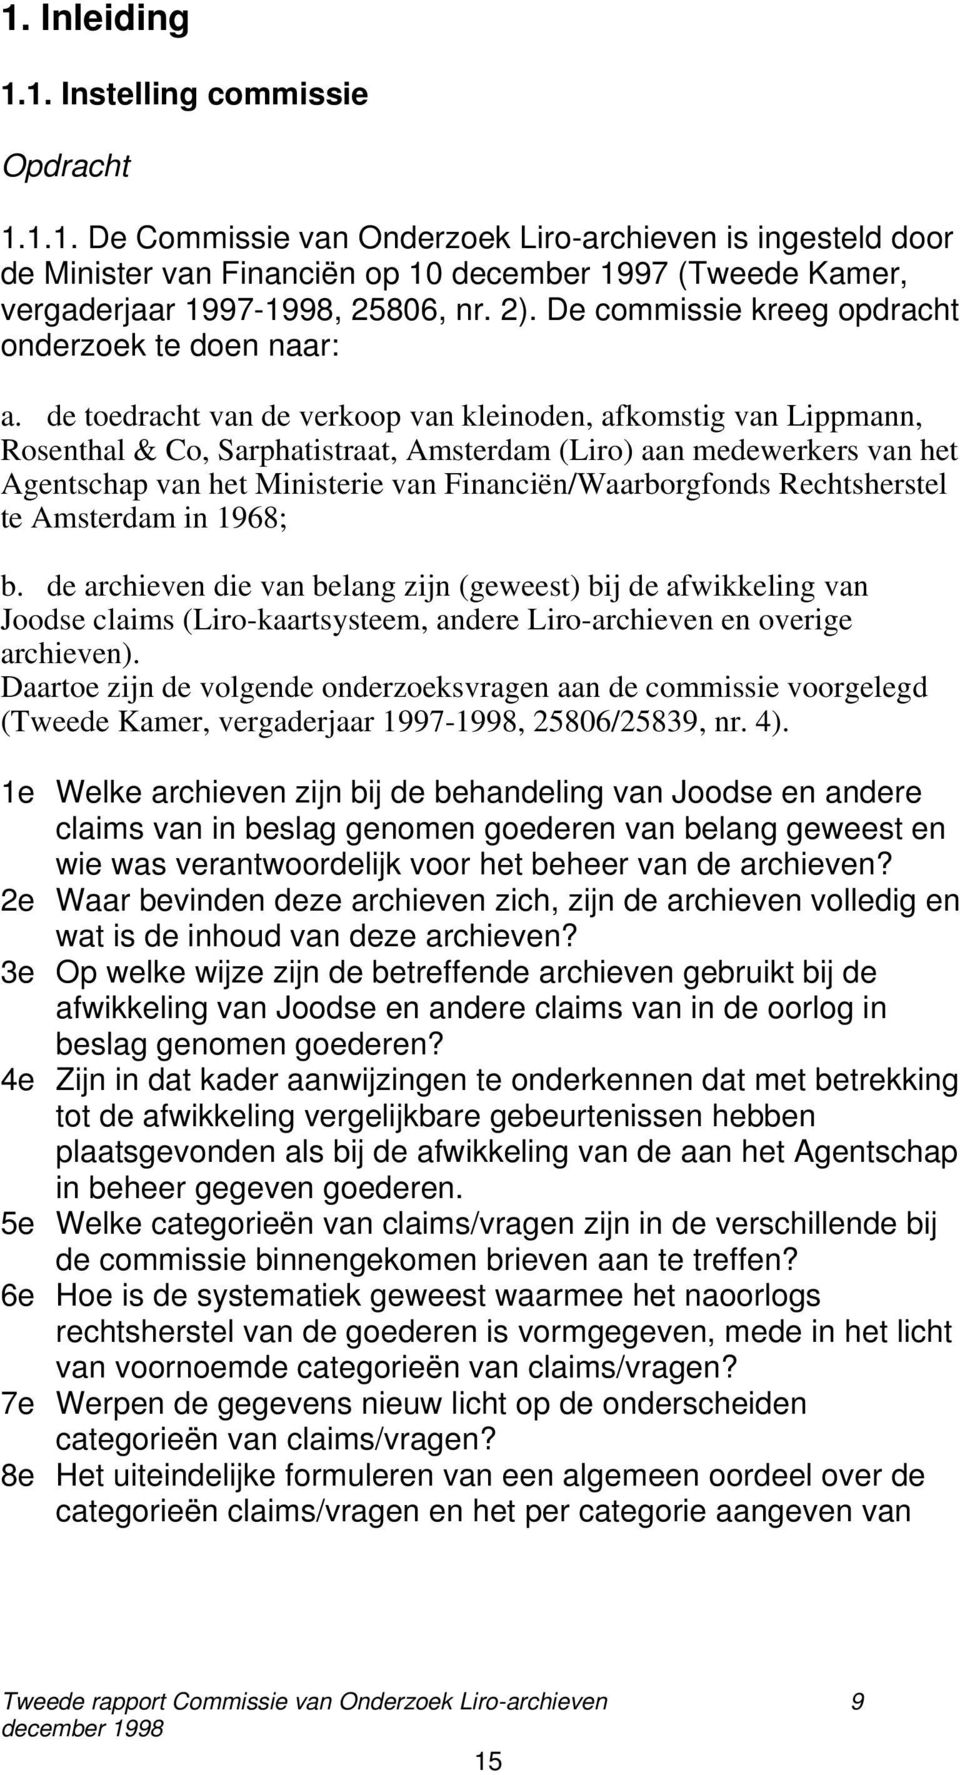 de toedracht van de verkoop van kleinoden, afkomstig van Lippmann, Rosenthal & Co, Sarphatistraat, Amsterdam (Liro) aan medewerkers van het Agentschap van het Ministerie van Financiën/Waarborgfonds